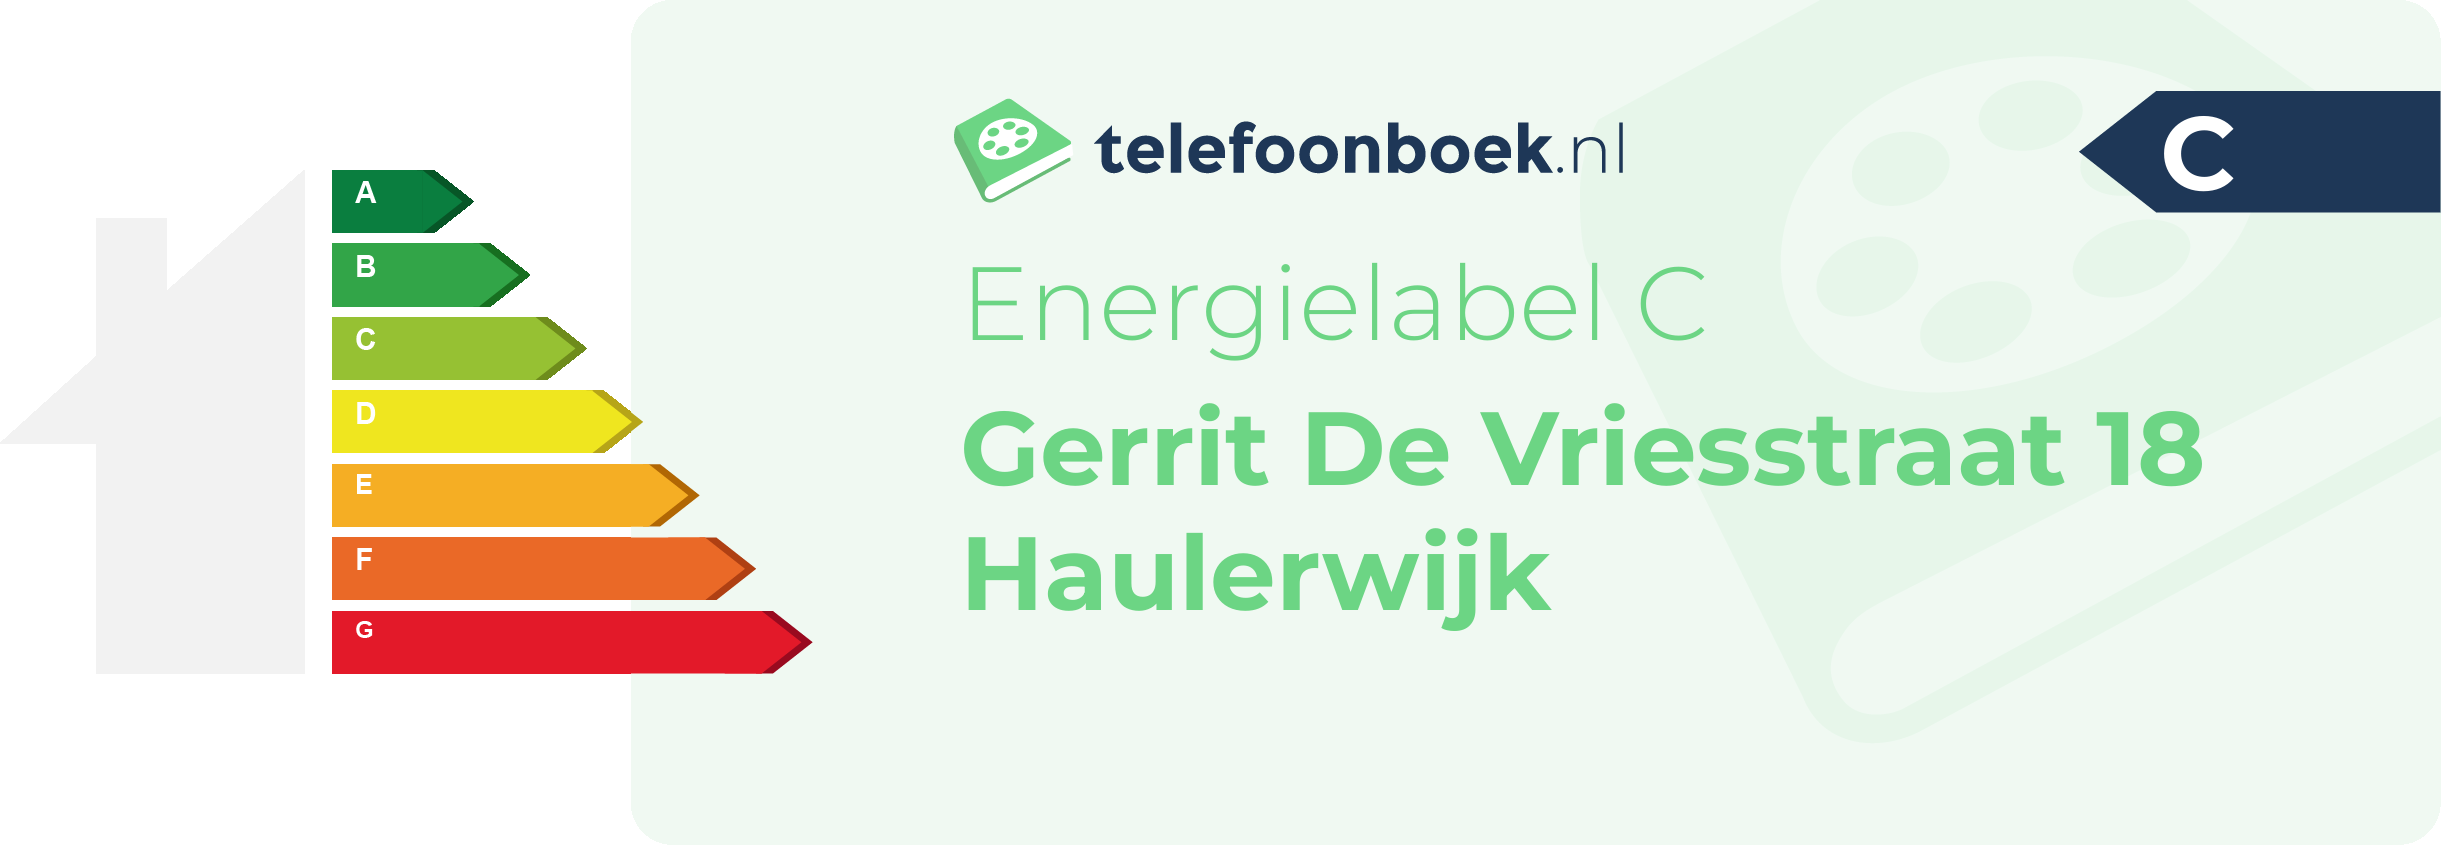 Energielabel Gerrit De Vriesstraat 18 Haulerwijk